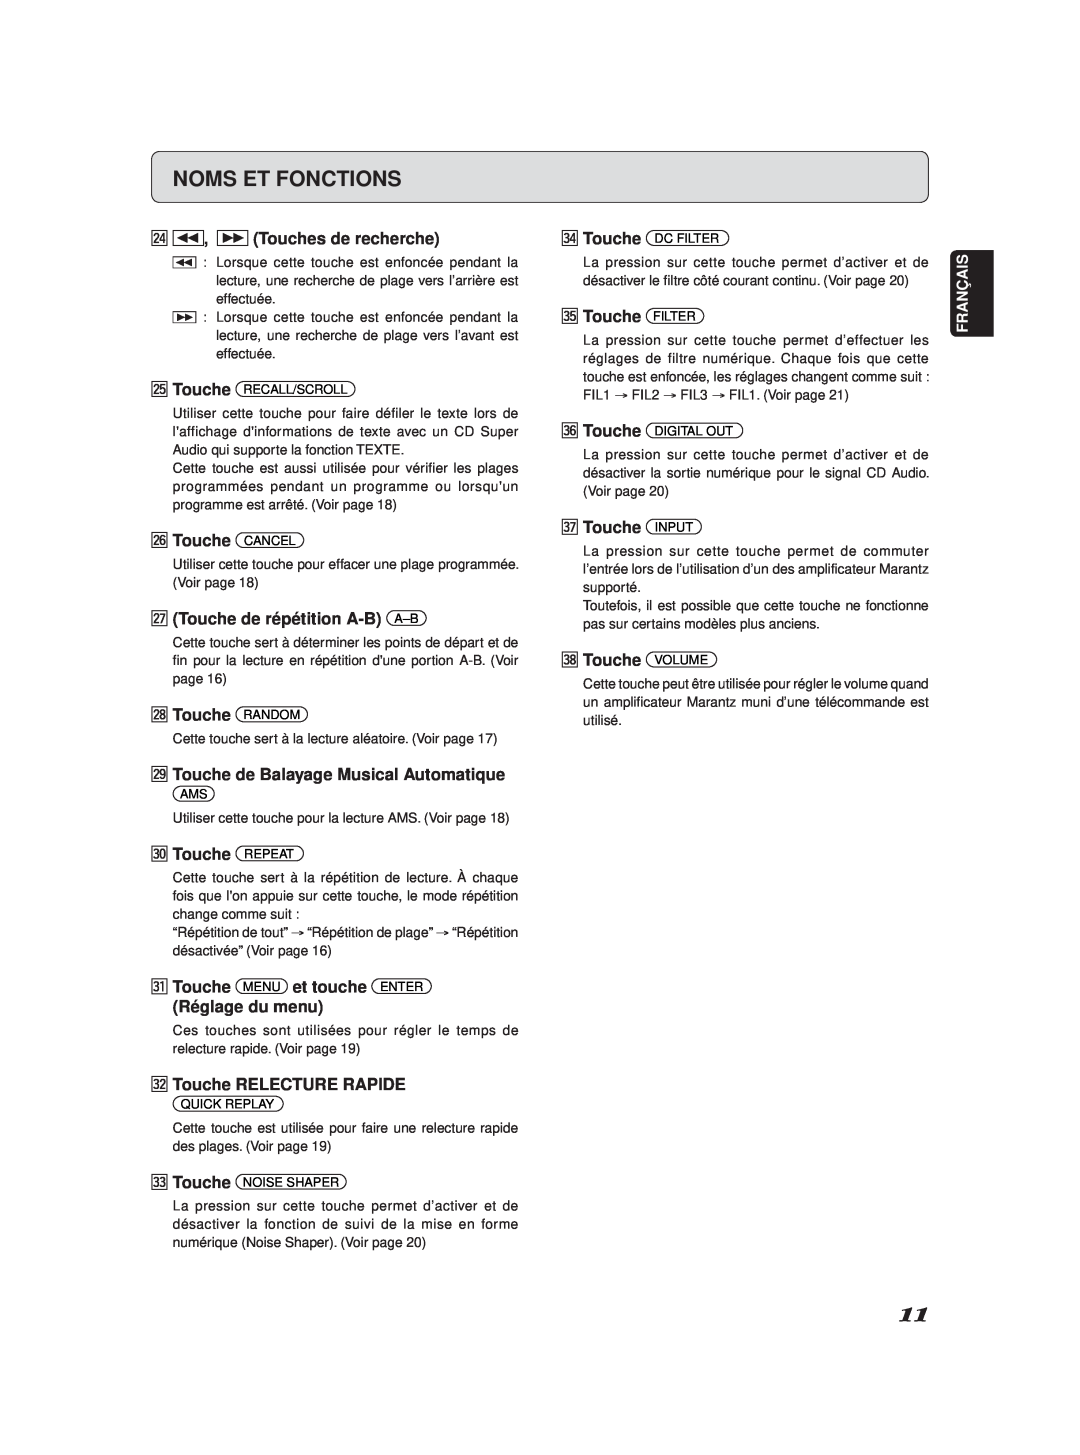 Marantz SA-11S2 manual Noms Et Fonctions, ¤4, Touches de recherche 